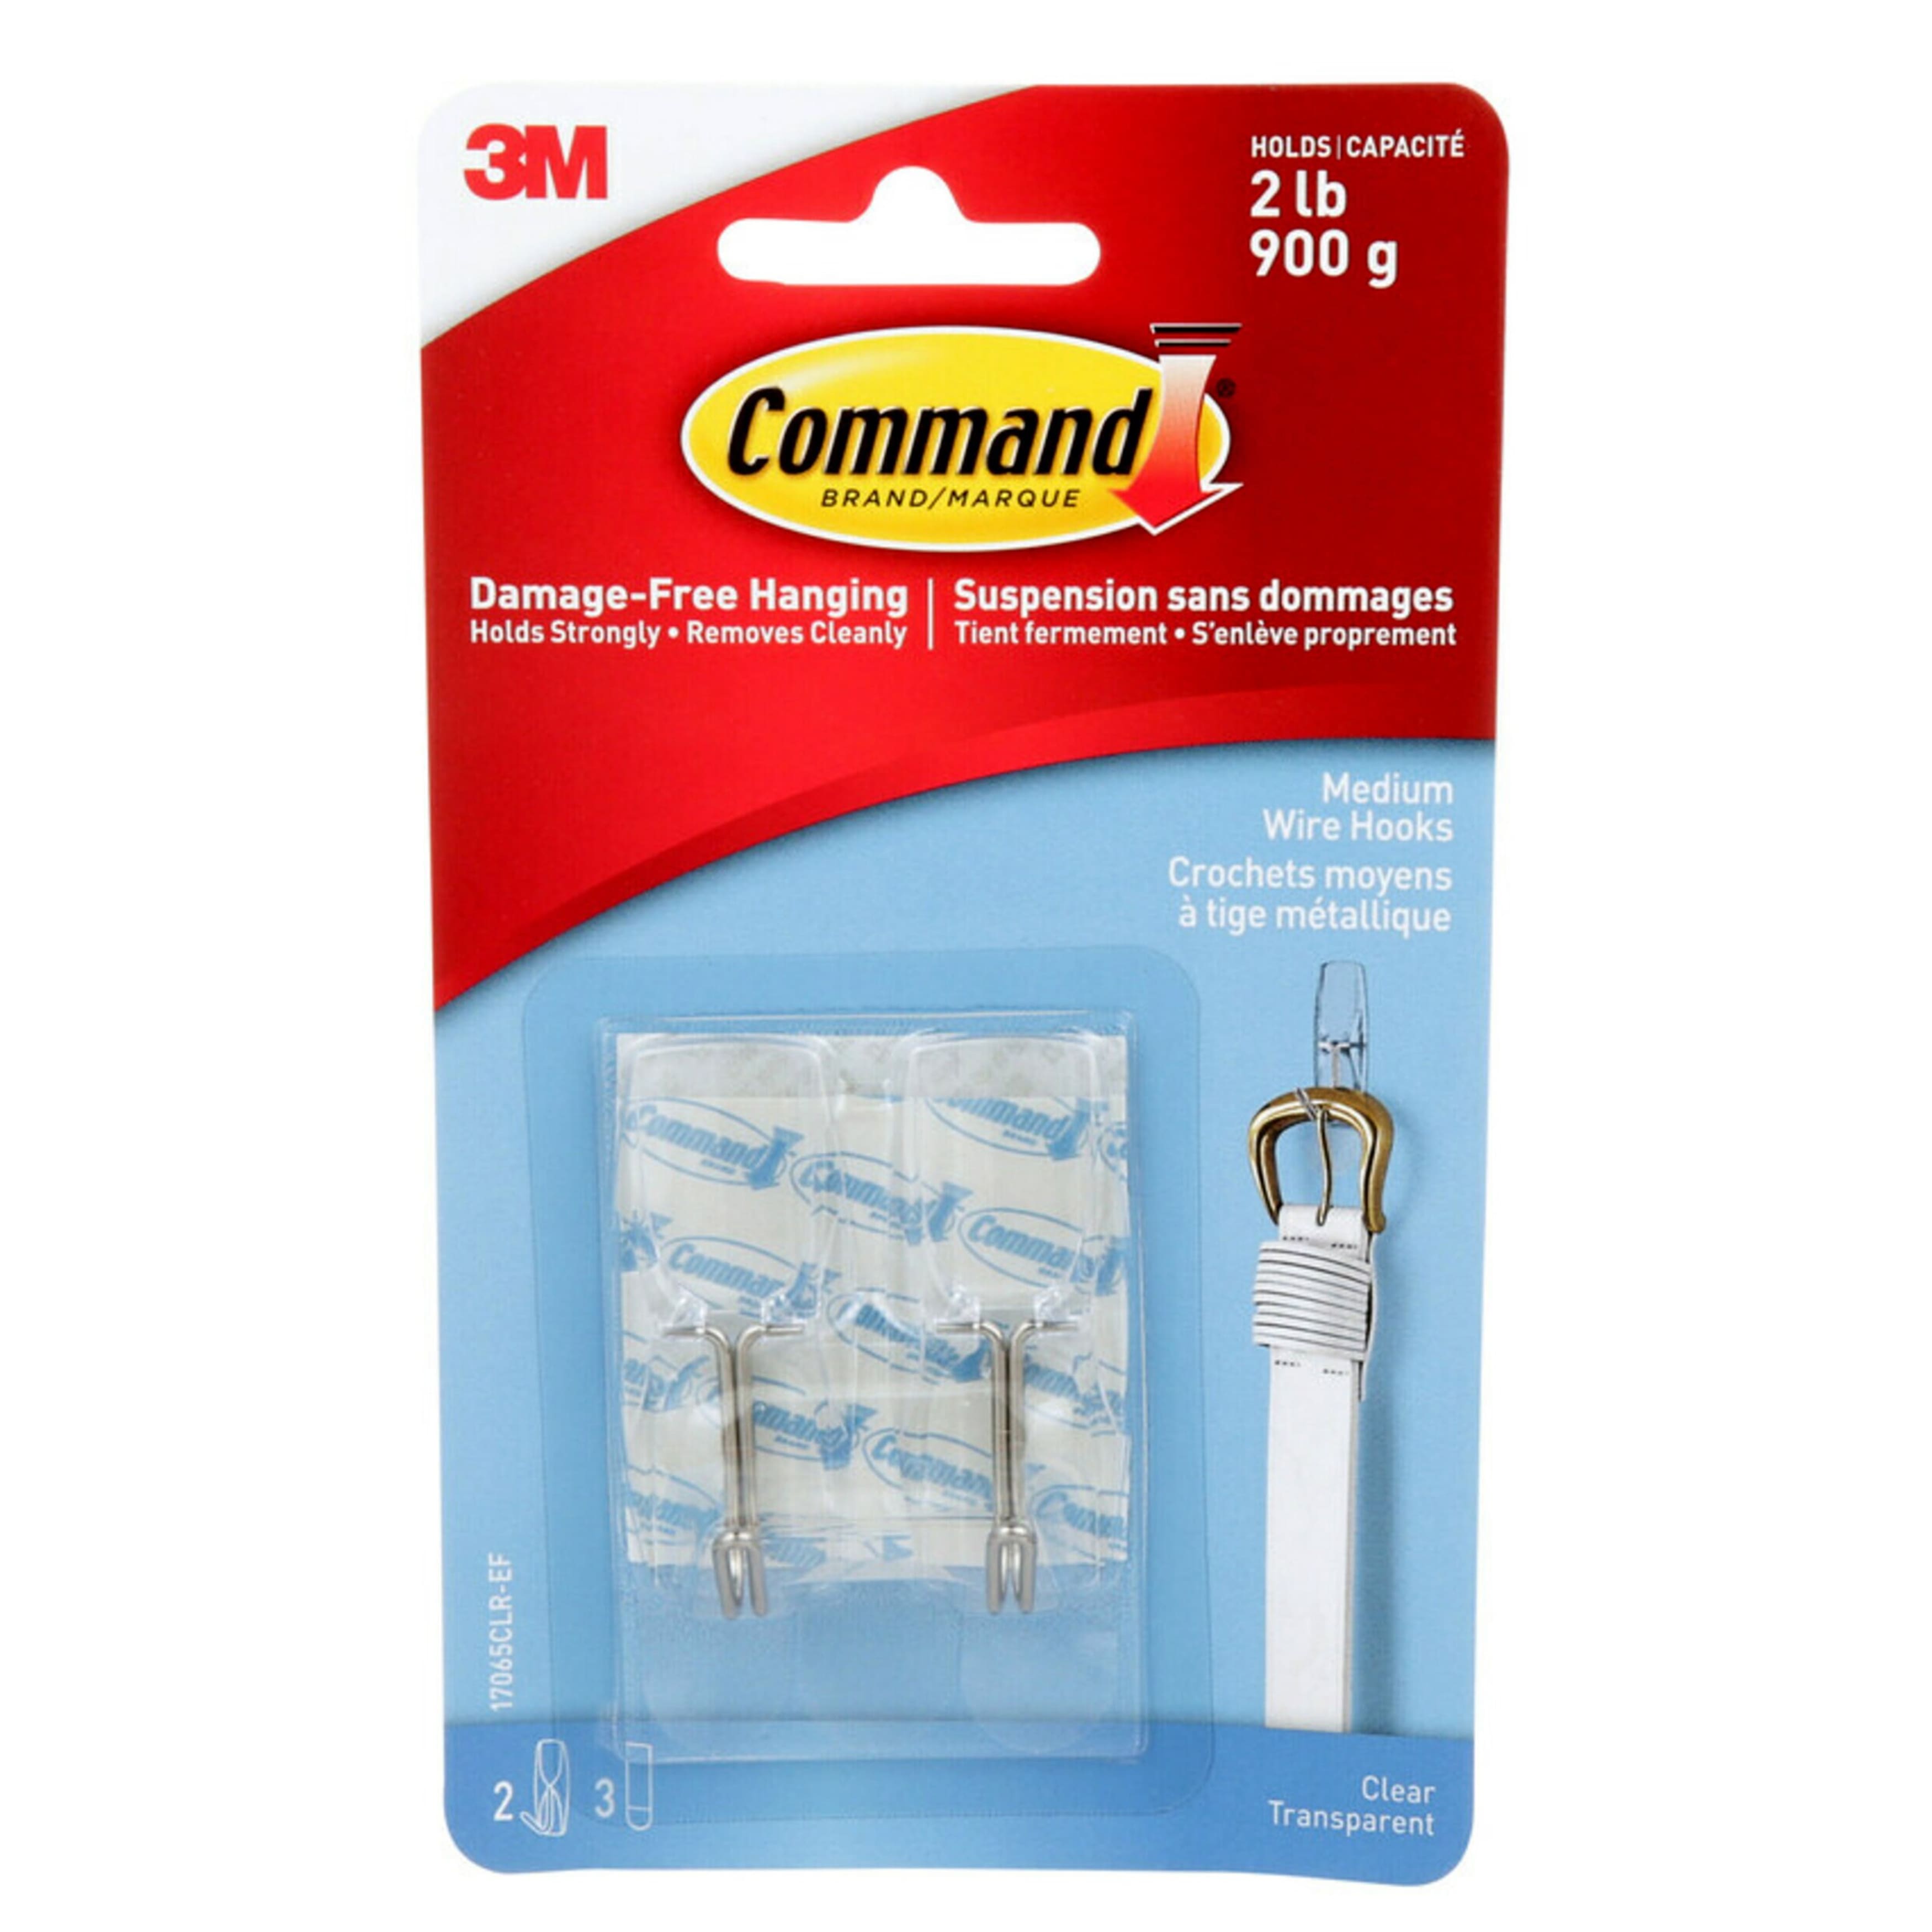 Buy in Bulk - 12 Packs: 2 ct. (24 total) Command™ Clear Medium